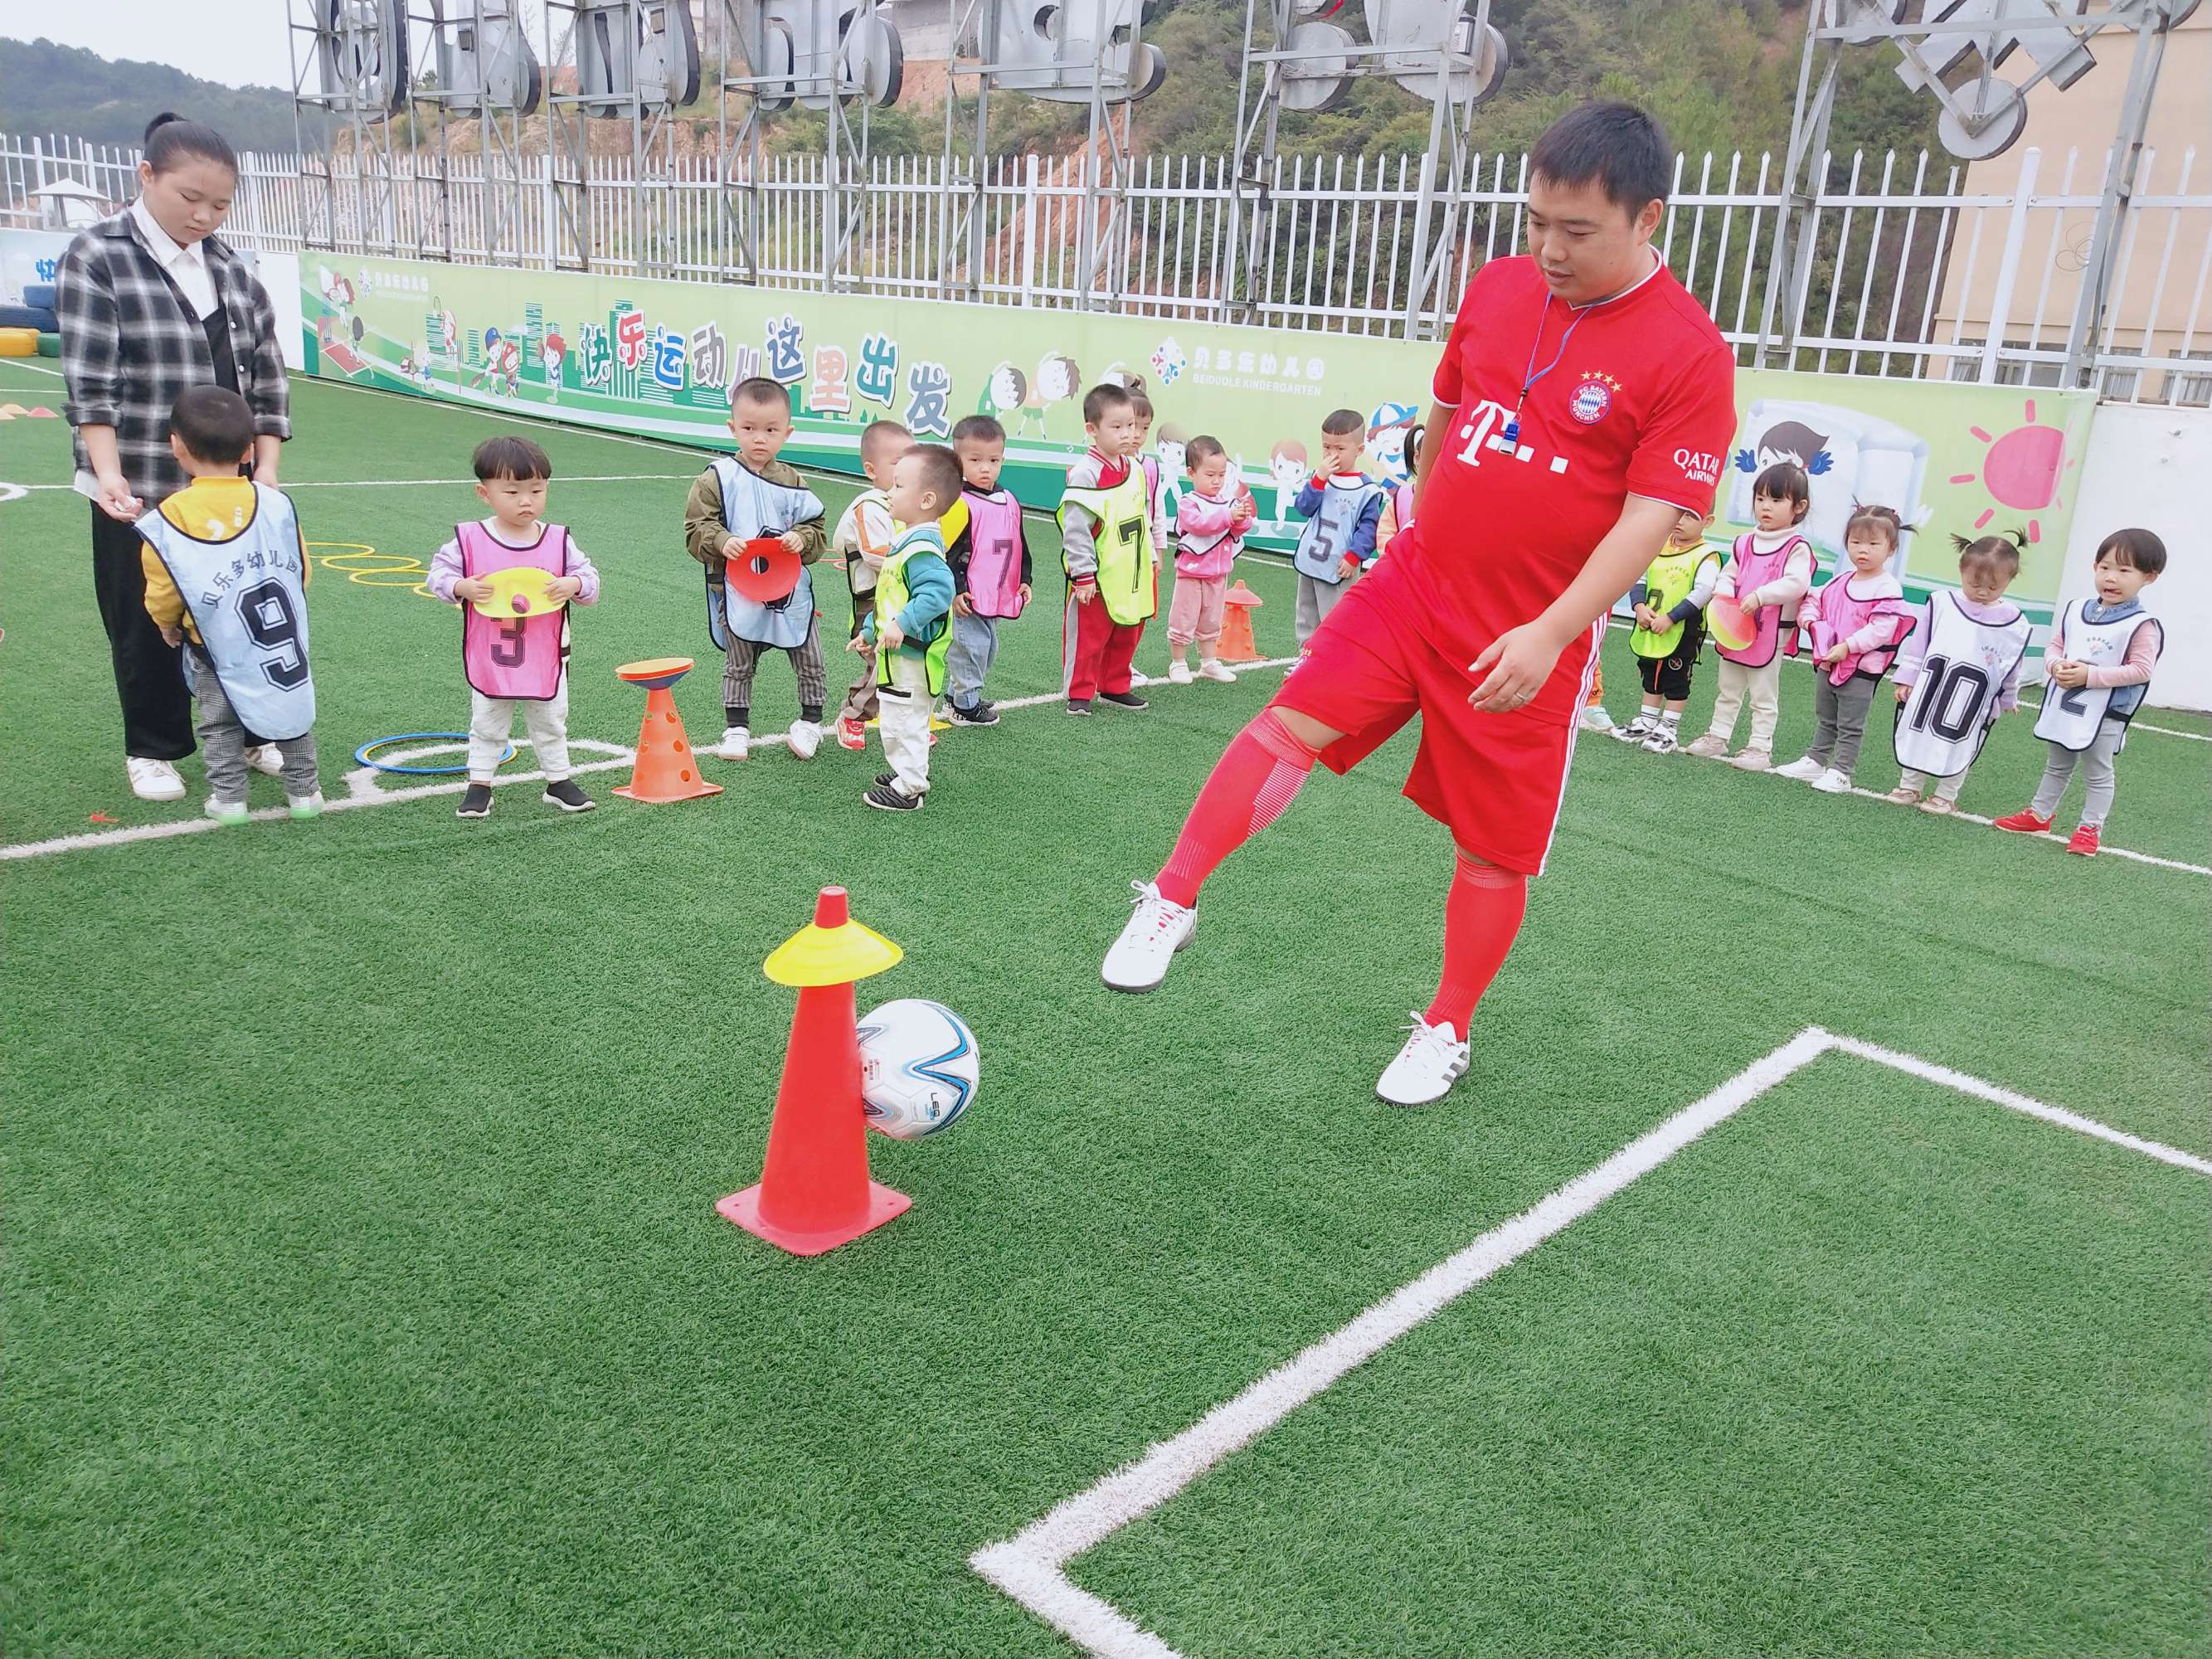 龙源期刊网.cn幼儿园如何开展足球游戏活动(图)